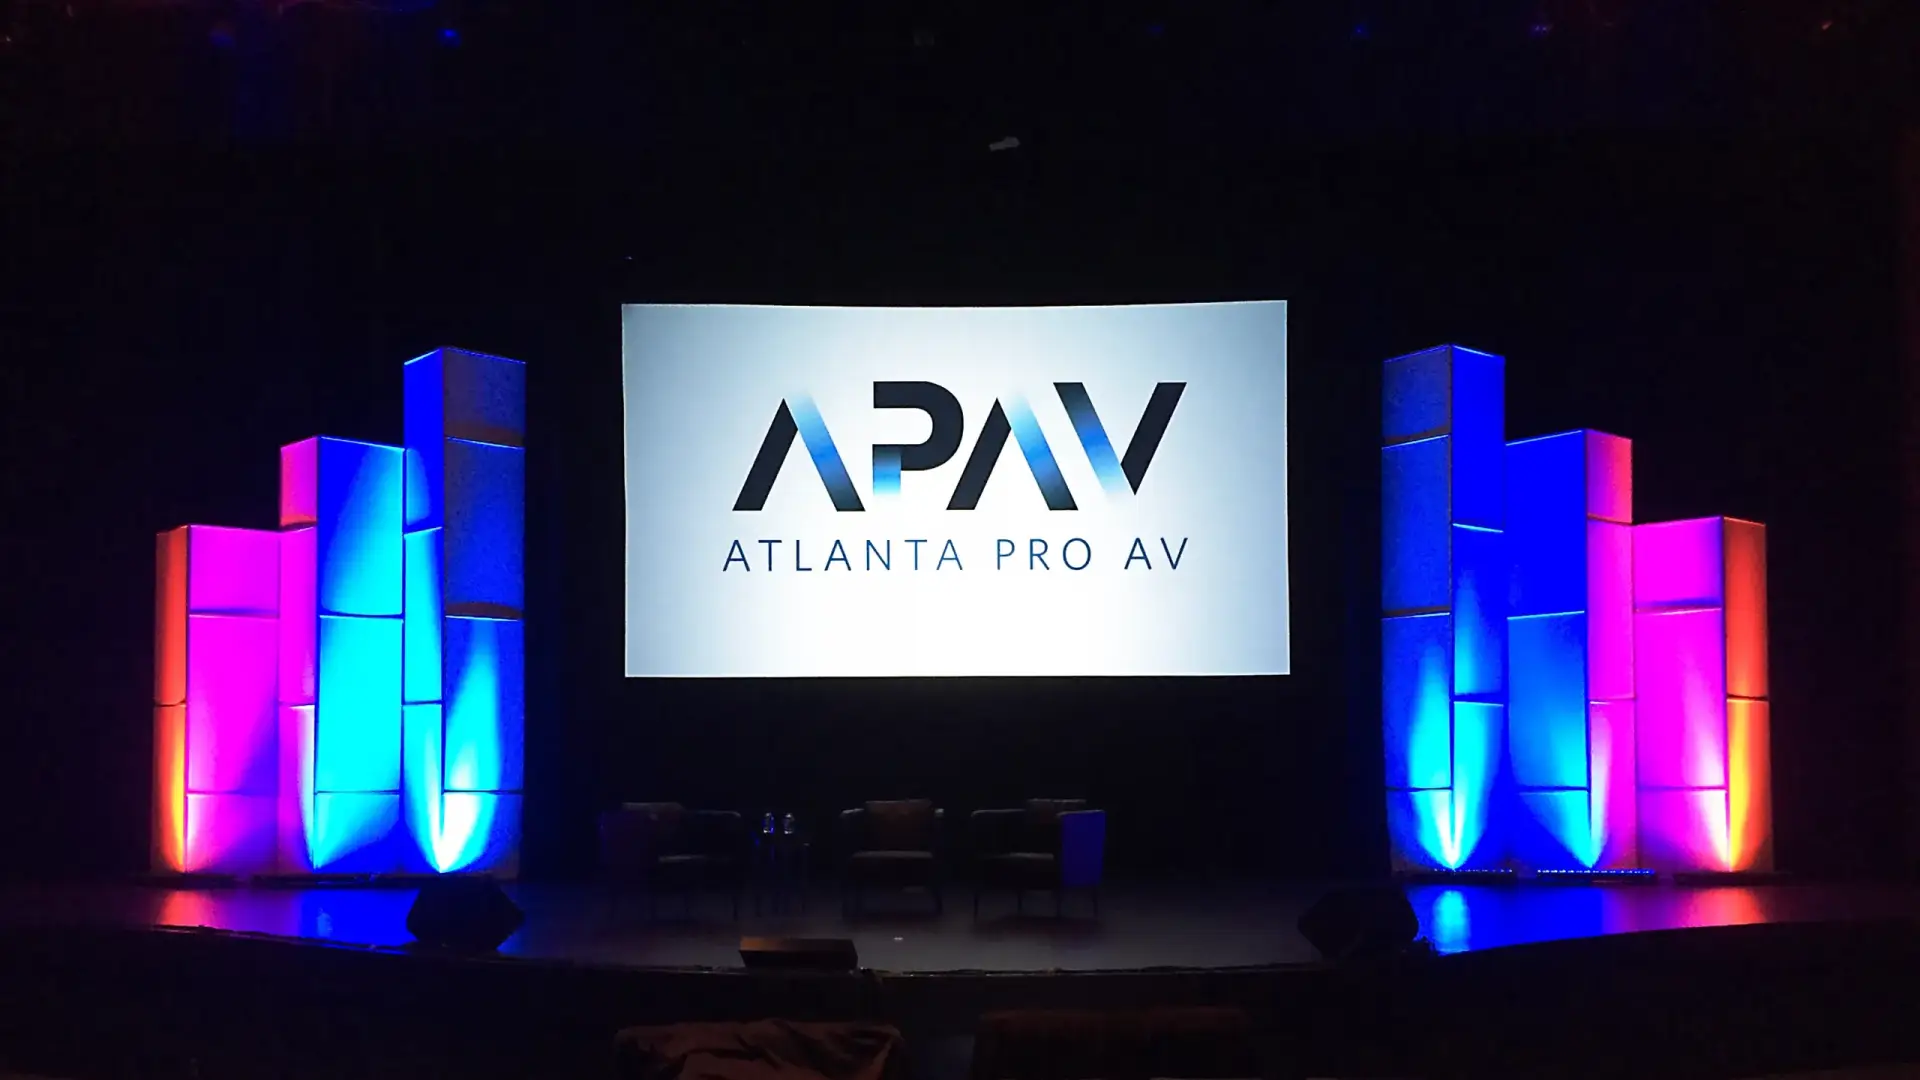 APAV event production